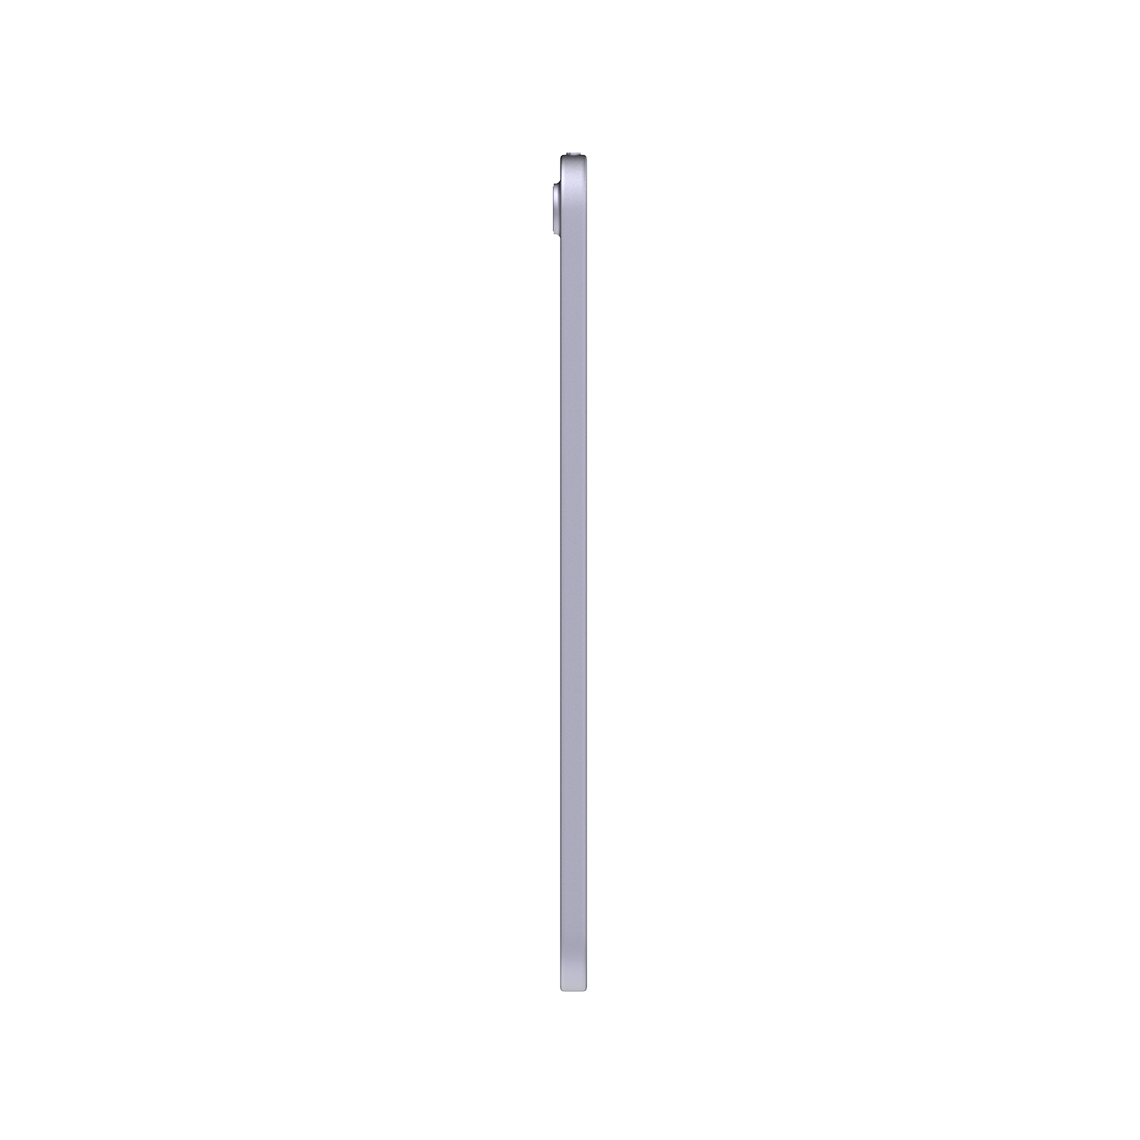 Apple iPad Mini 8.3-inch 6th Generation - Purple - 64GB, Wi-Fi, Open Box